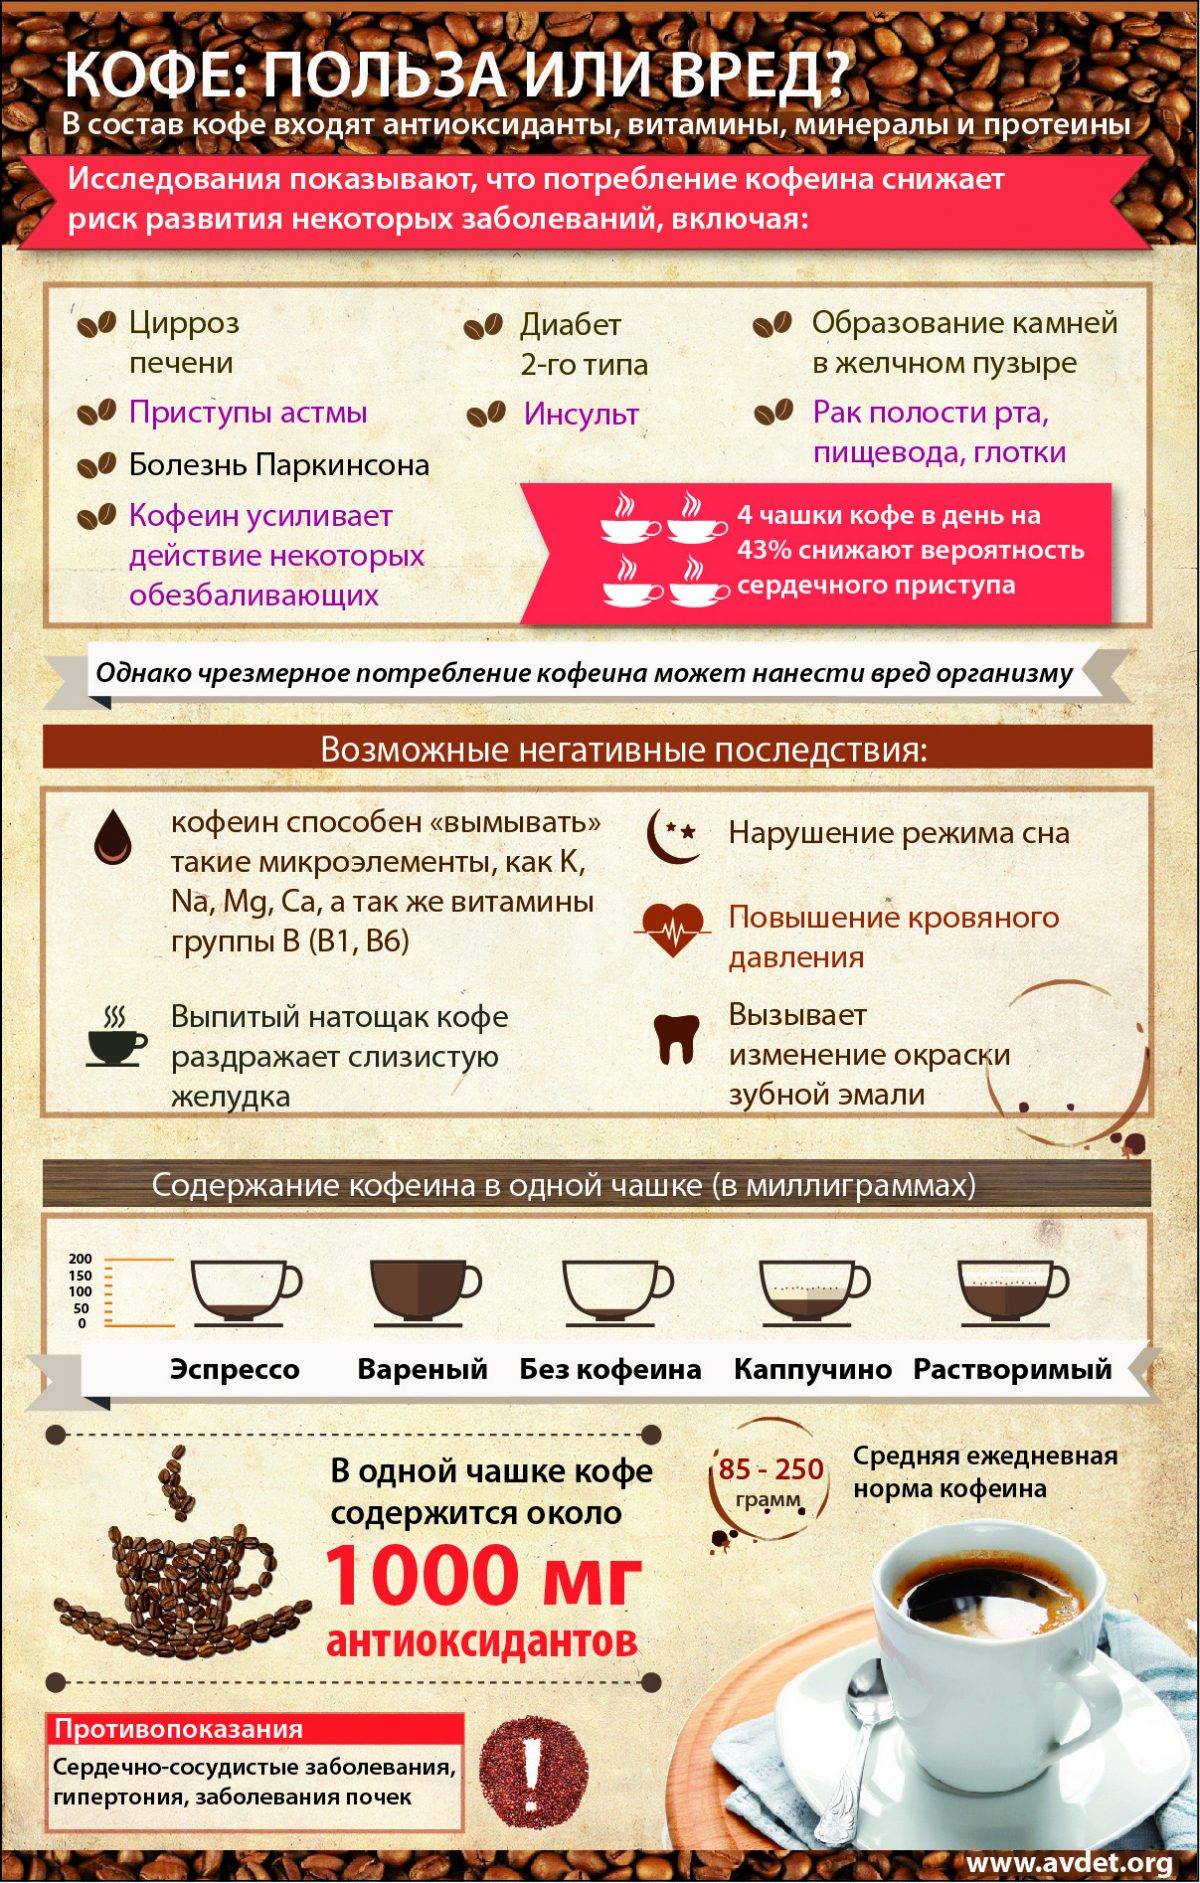 Диета при псориазе: таблица продуктов, подробно что нельзя и можно есть при псориазе